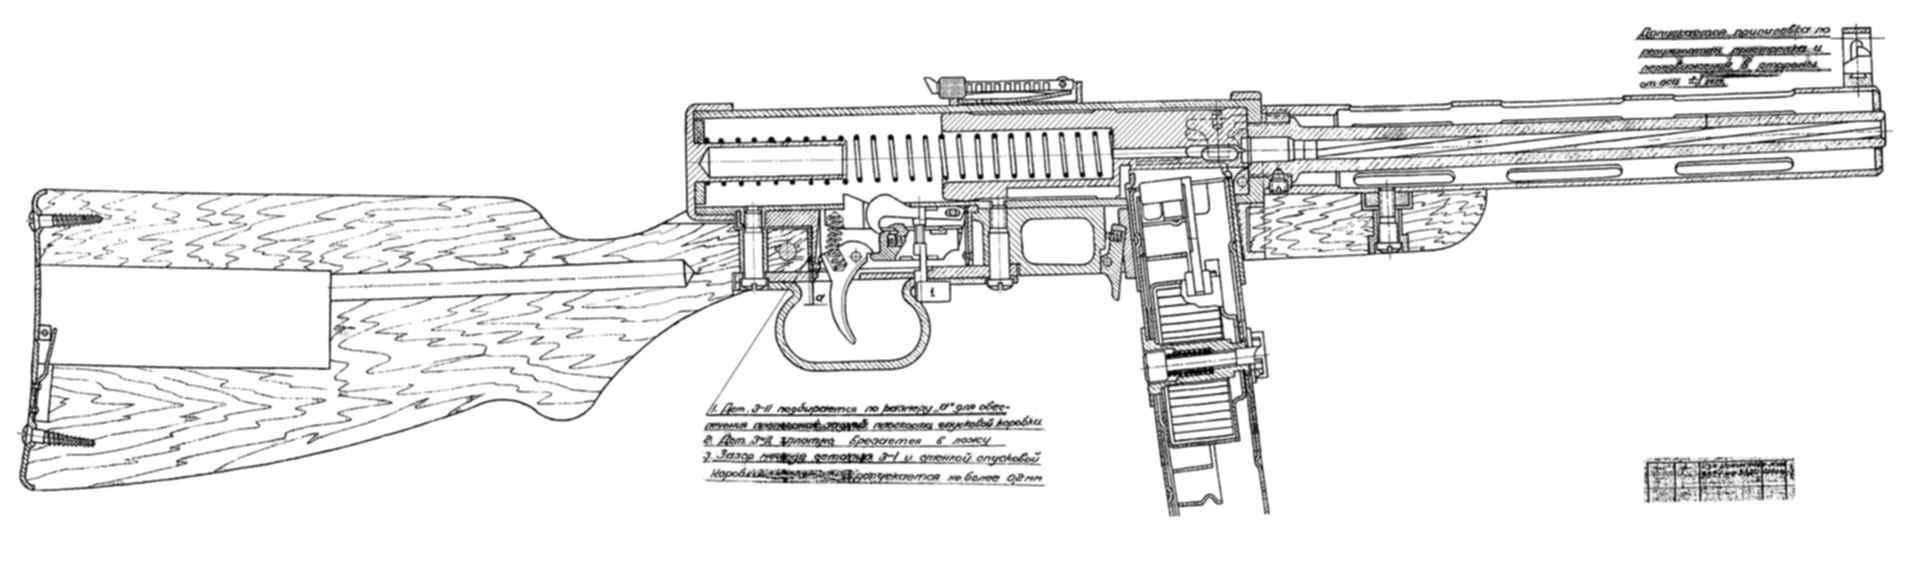 Пистолет-пулемёт Шпагина чертежи